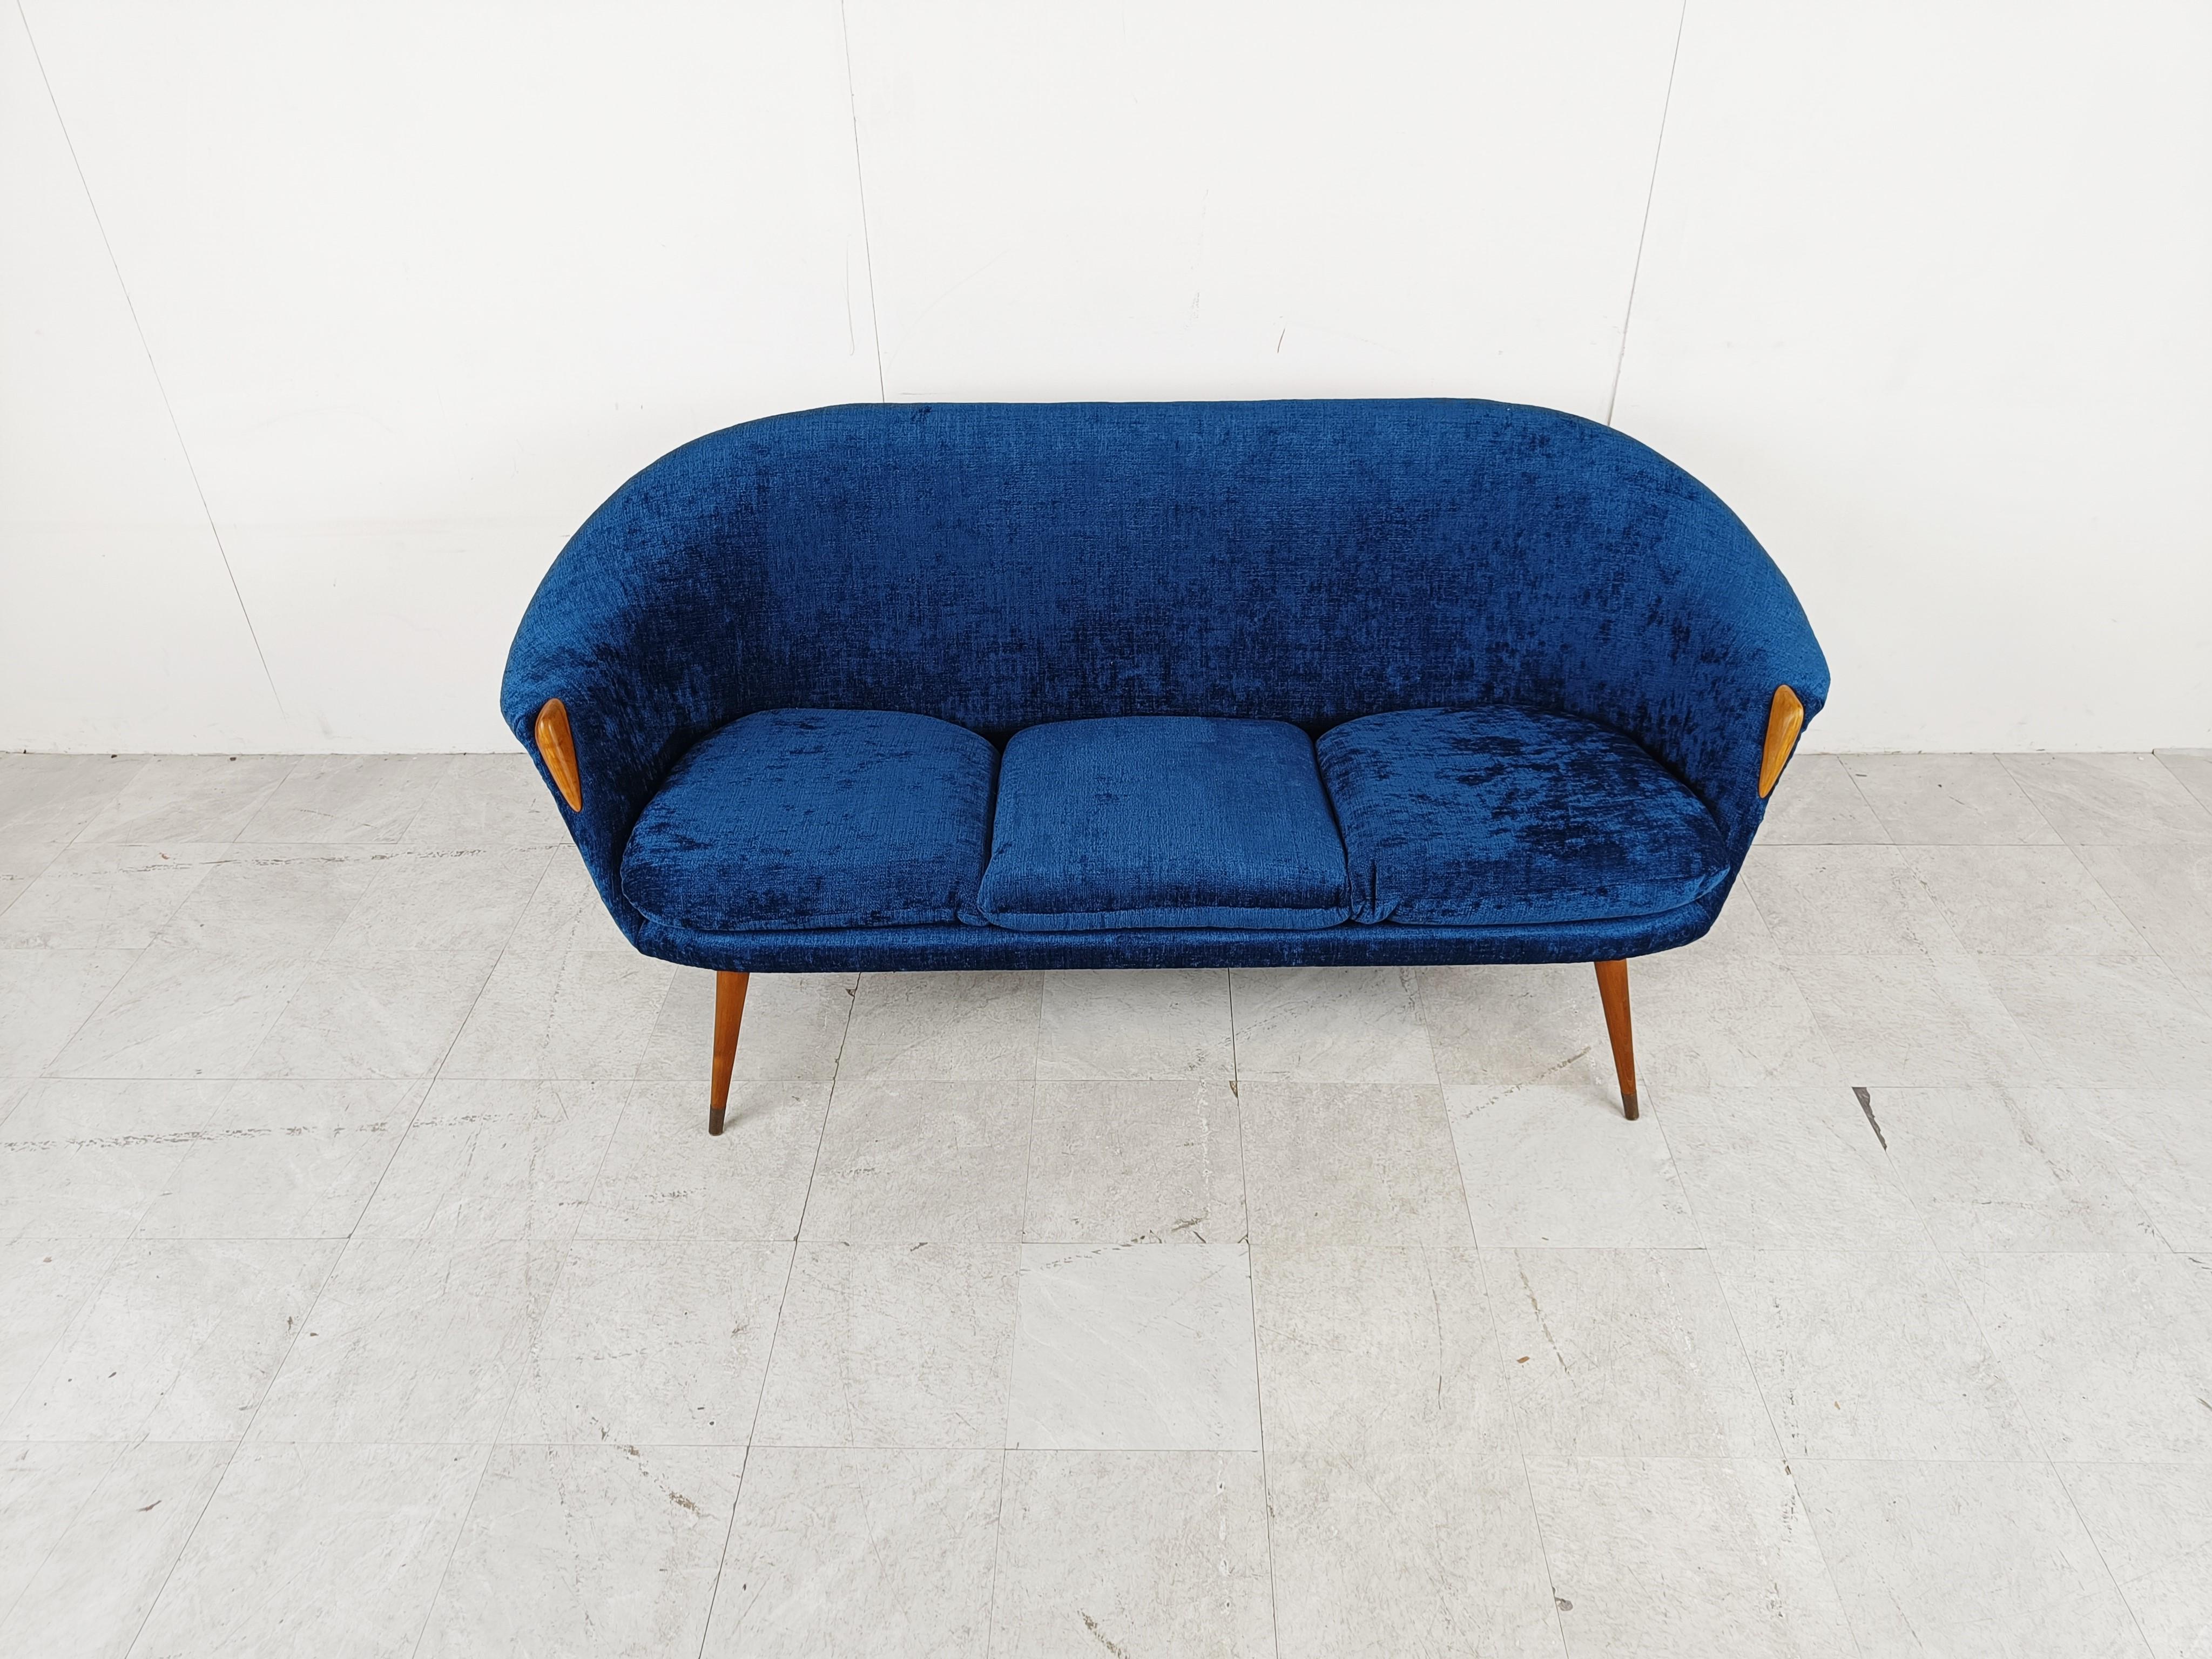 Schönes Sofa aus der Mitte des Jahrhunderts, das Nanna Ditzel zugeschrieben wird. 

Auffälliges Design mit fein gearbeiteten Holzbeinen.

Das Sofa wurde mit blauem Stoff neu bezogen.

1950er Jahre - Dänemark

Perfekter Zustand

Abmessungen
Höhe: